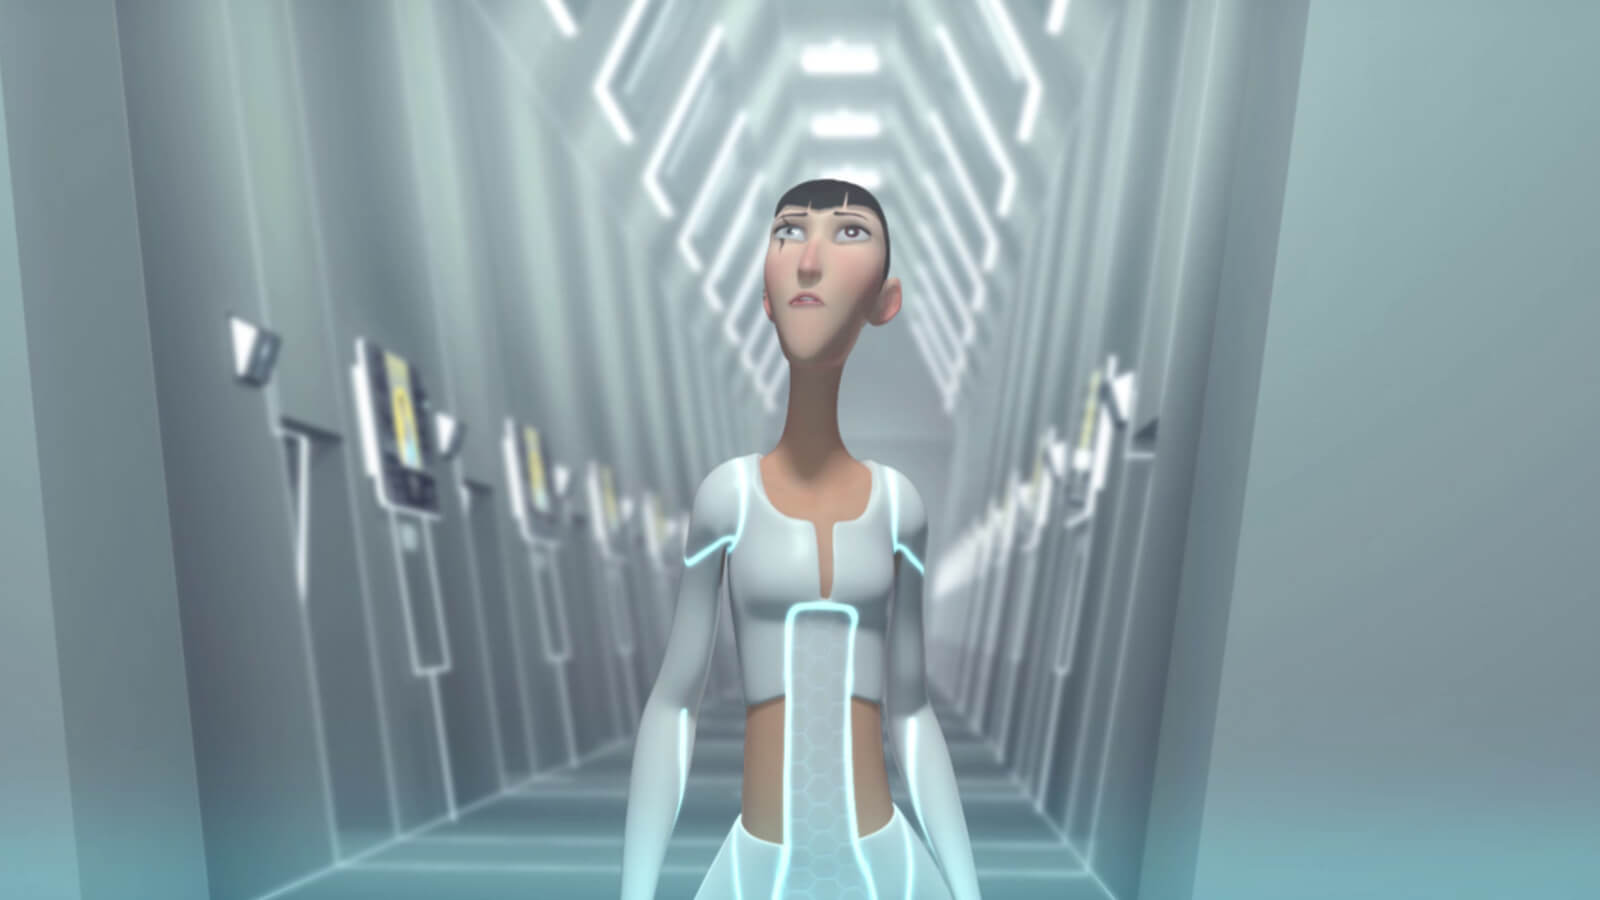 Una mujer alta y delgada con una cicatriz en el ojo con ropa blanca futurista camina por un corredor blanco muy iluminado.